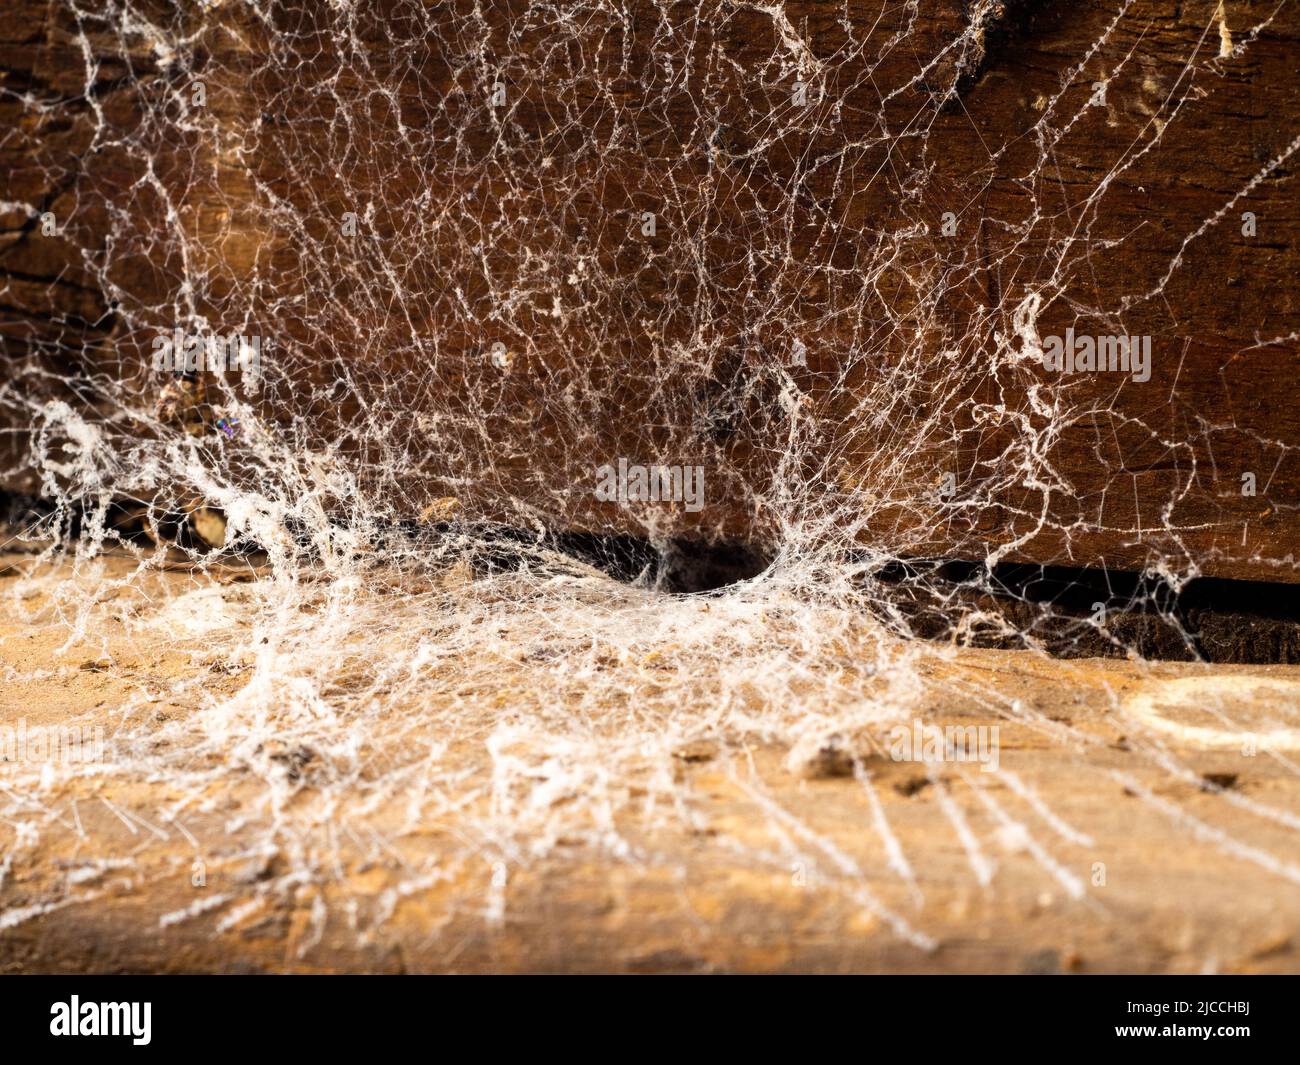 Araignée de trappe dans un vieux meuble dans une maison abandonnée. Banque D'Images